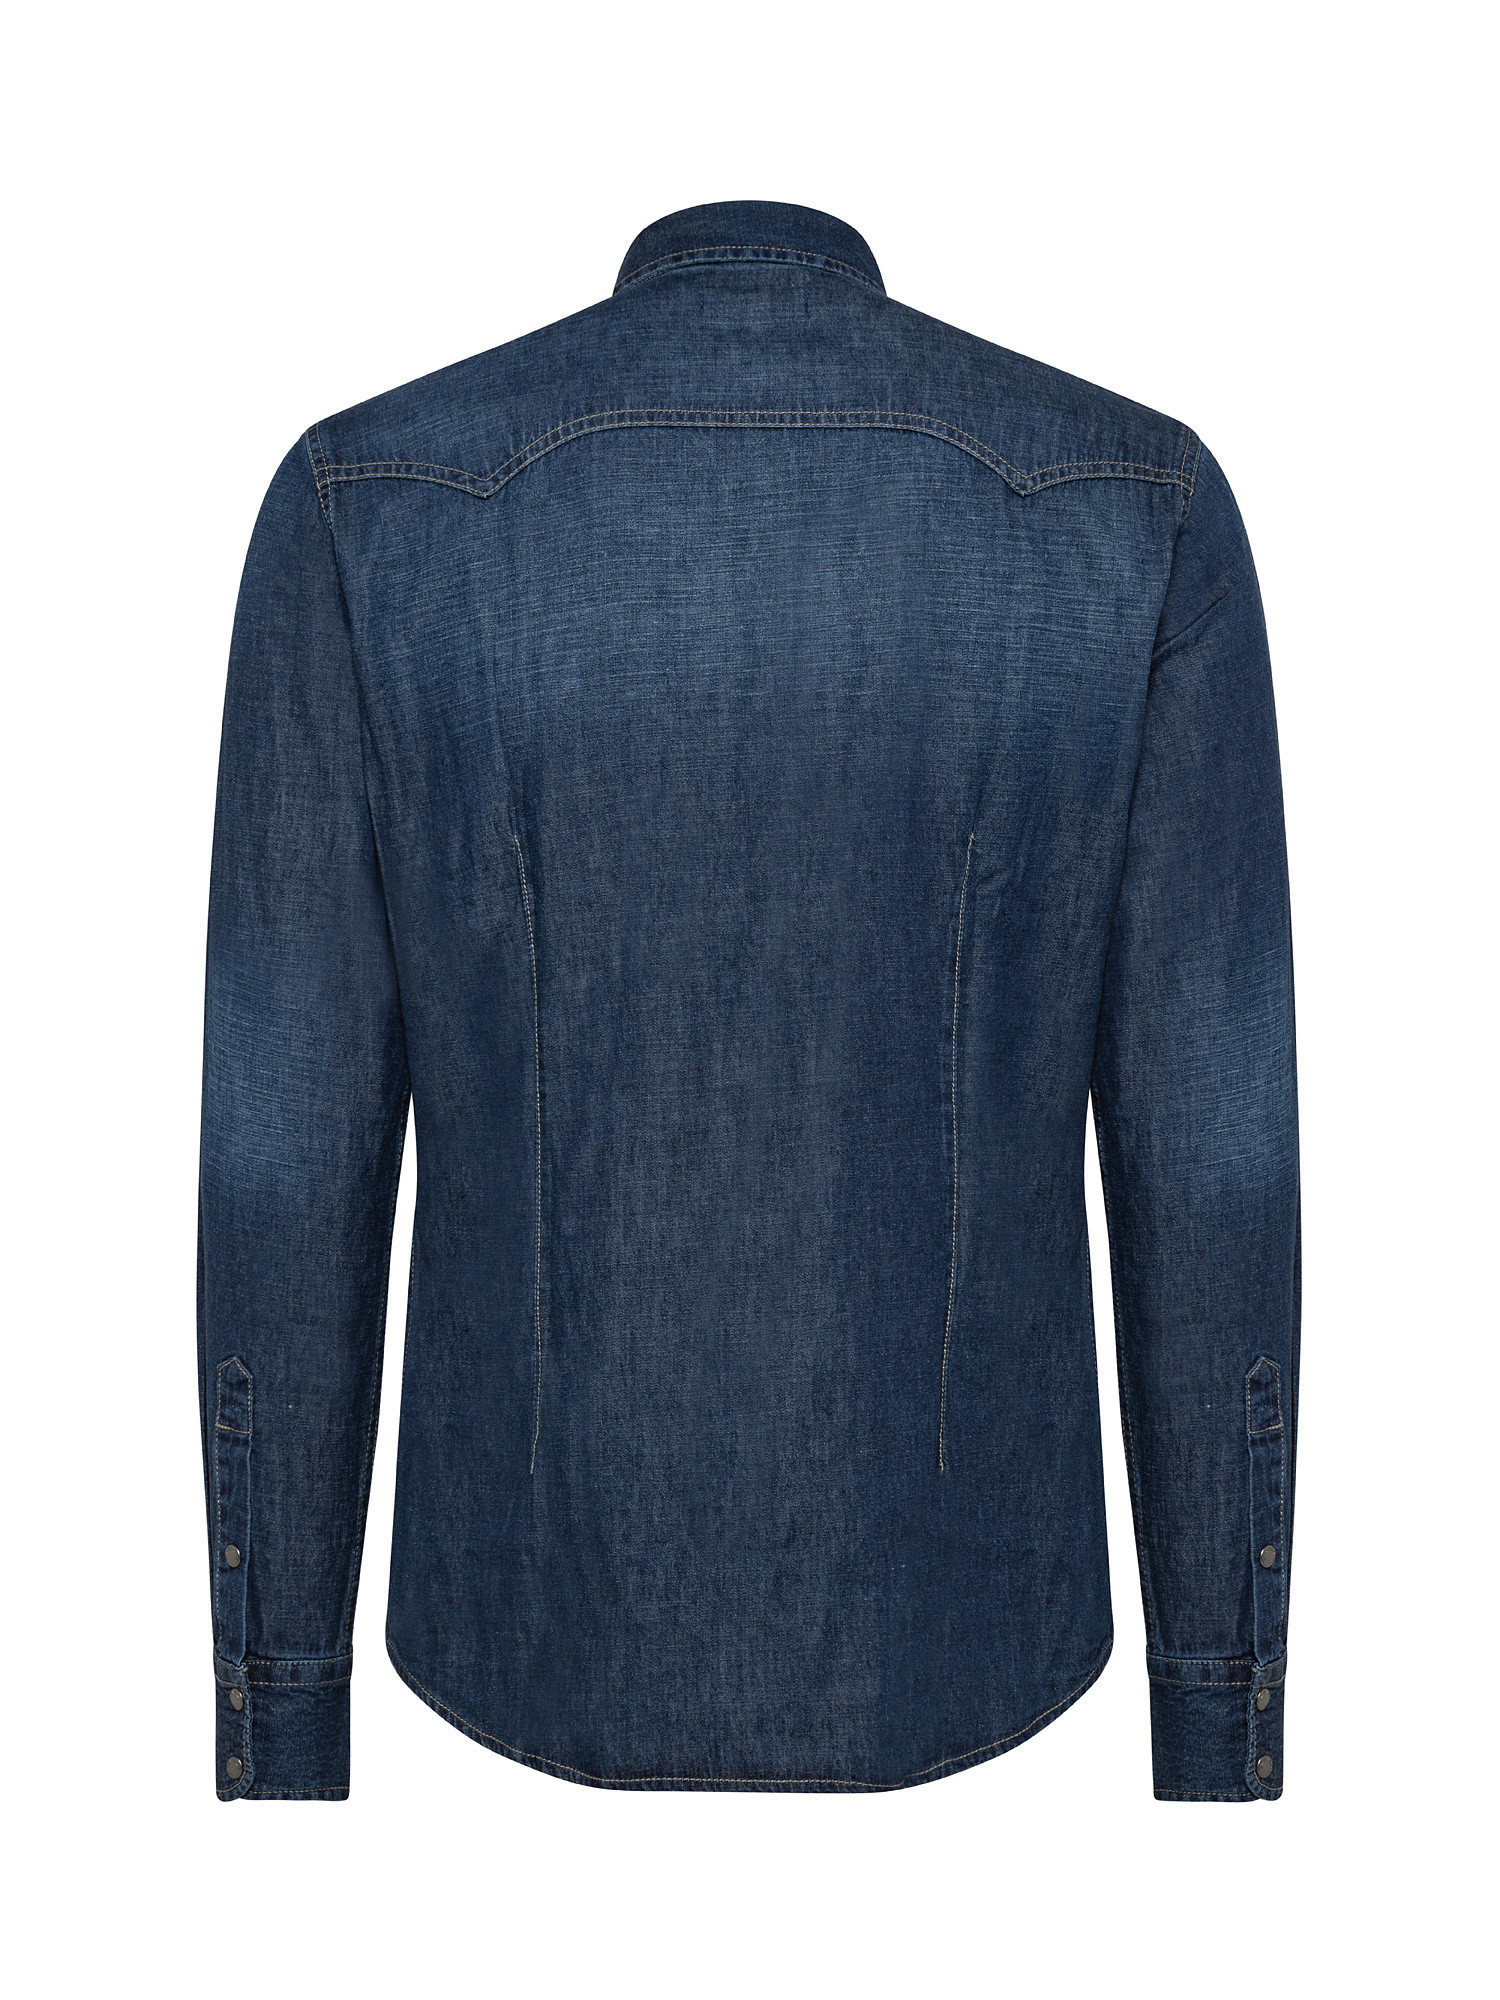 Camicia elasticizzata in denim leggero, Blu, large image number 1